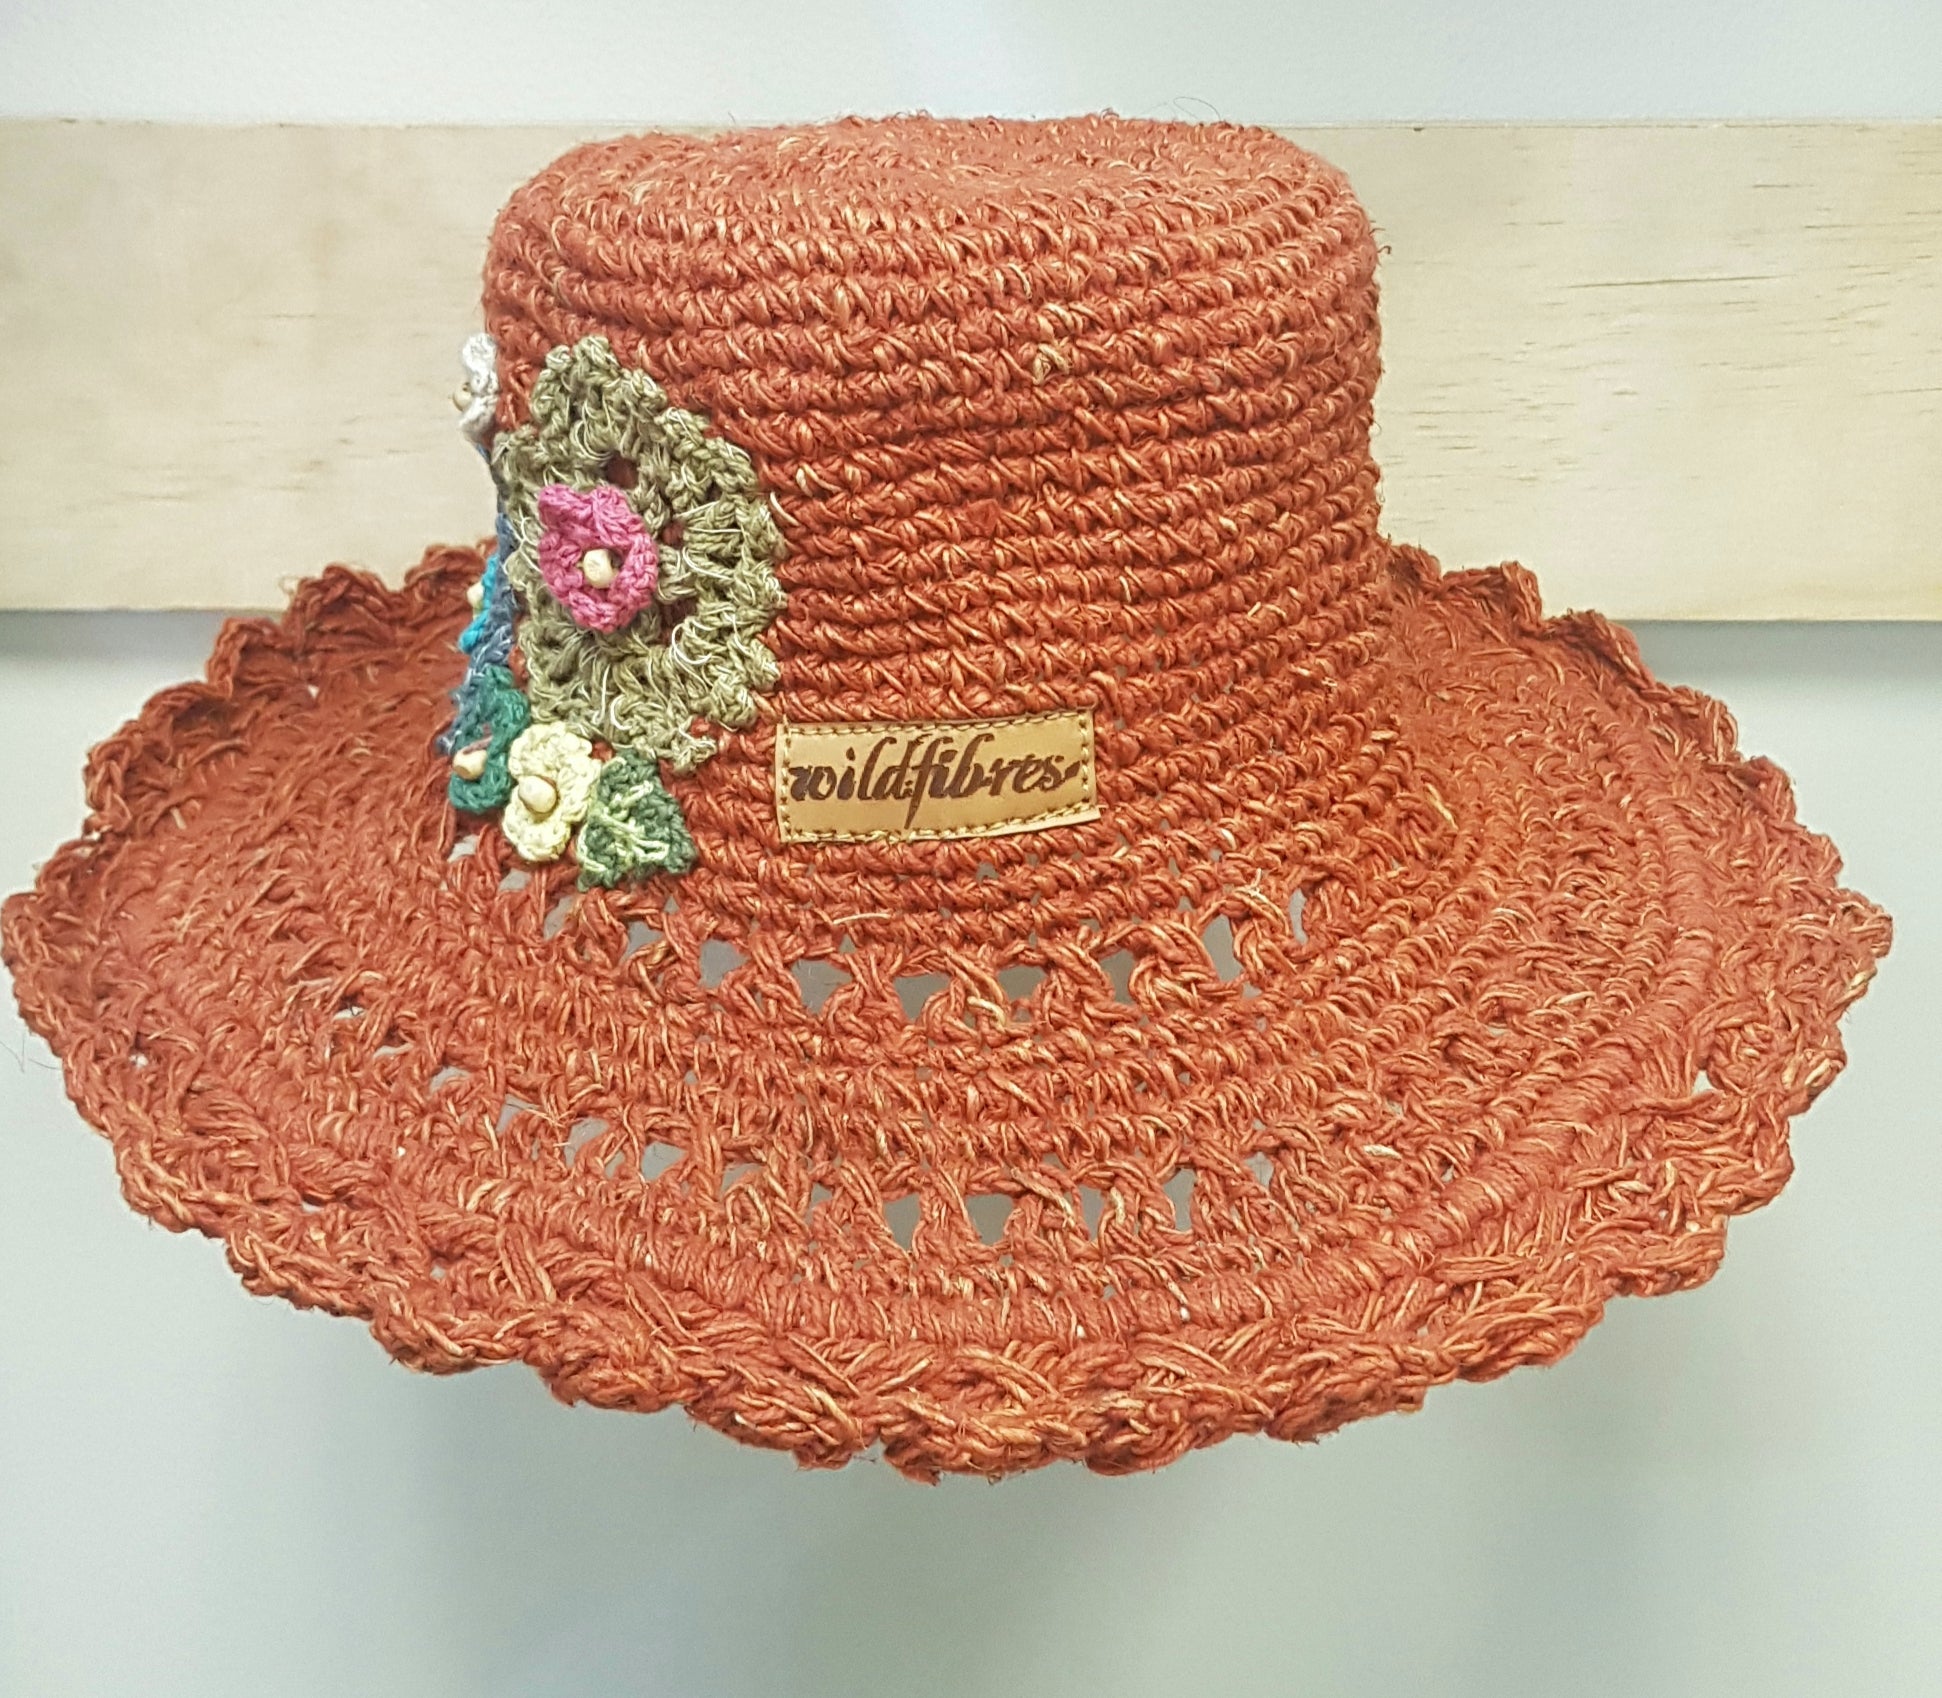 Hand made Crochet flowers hemp hat